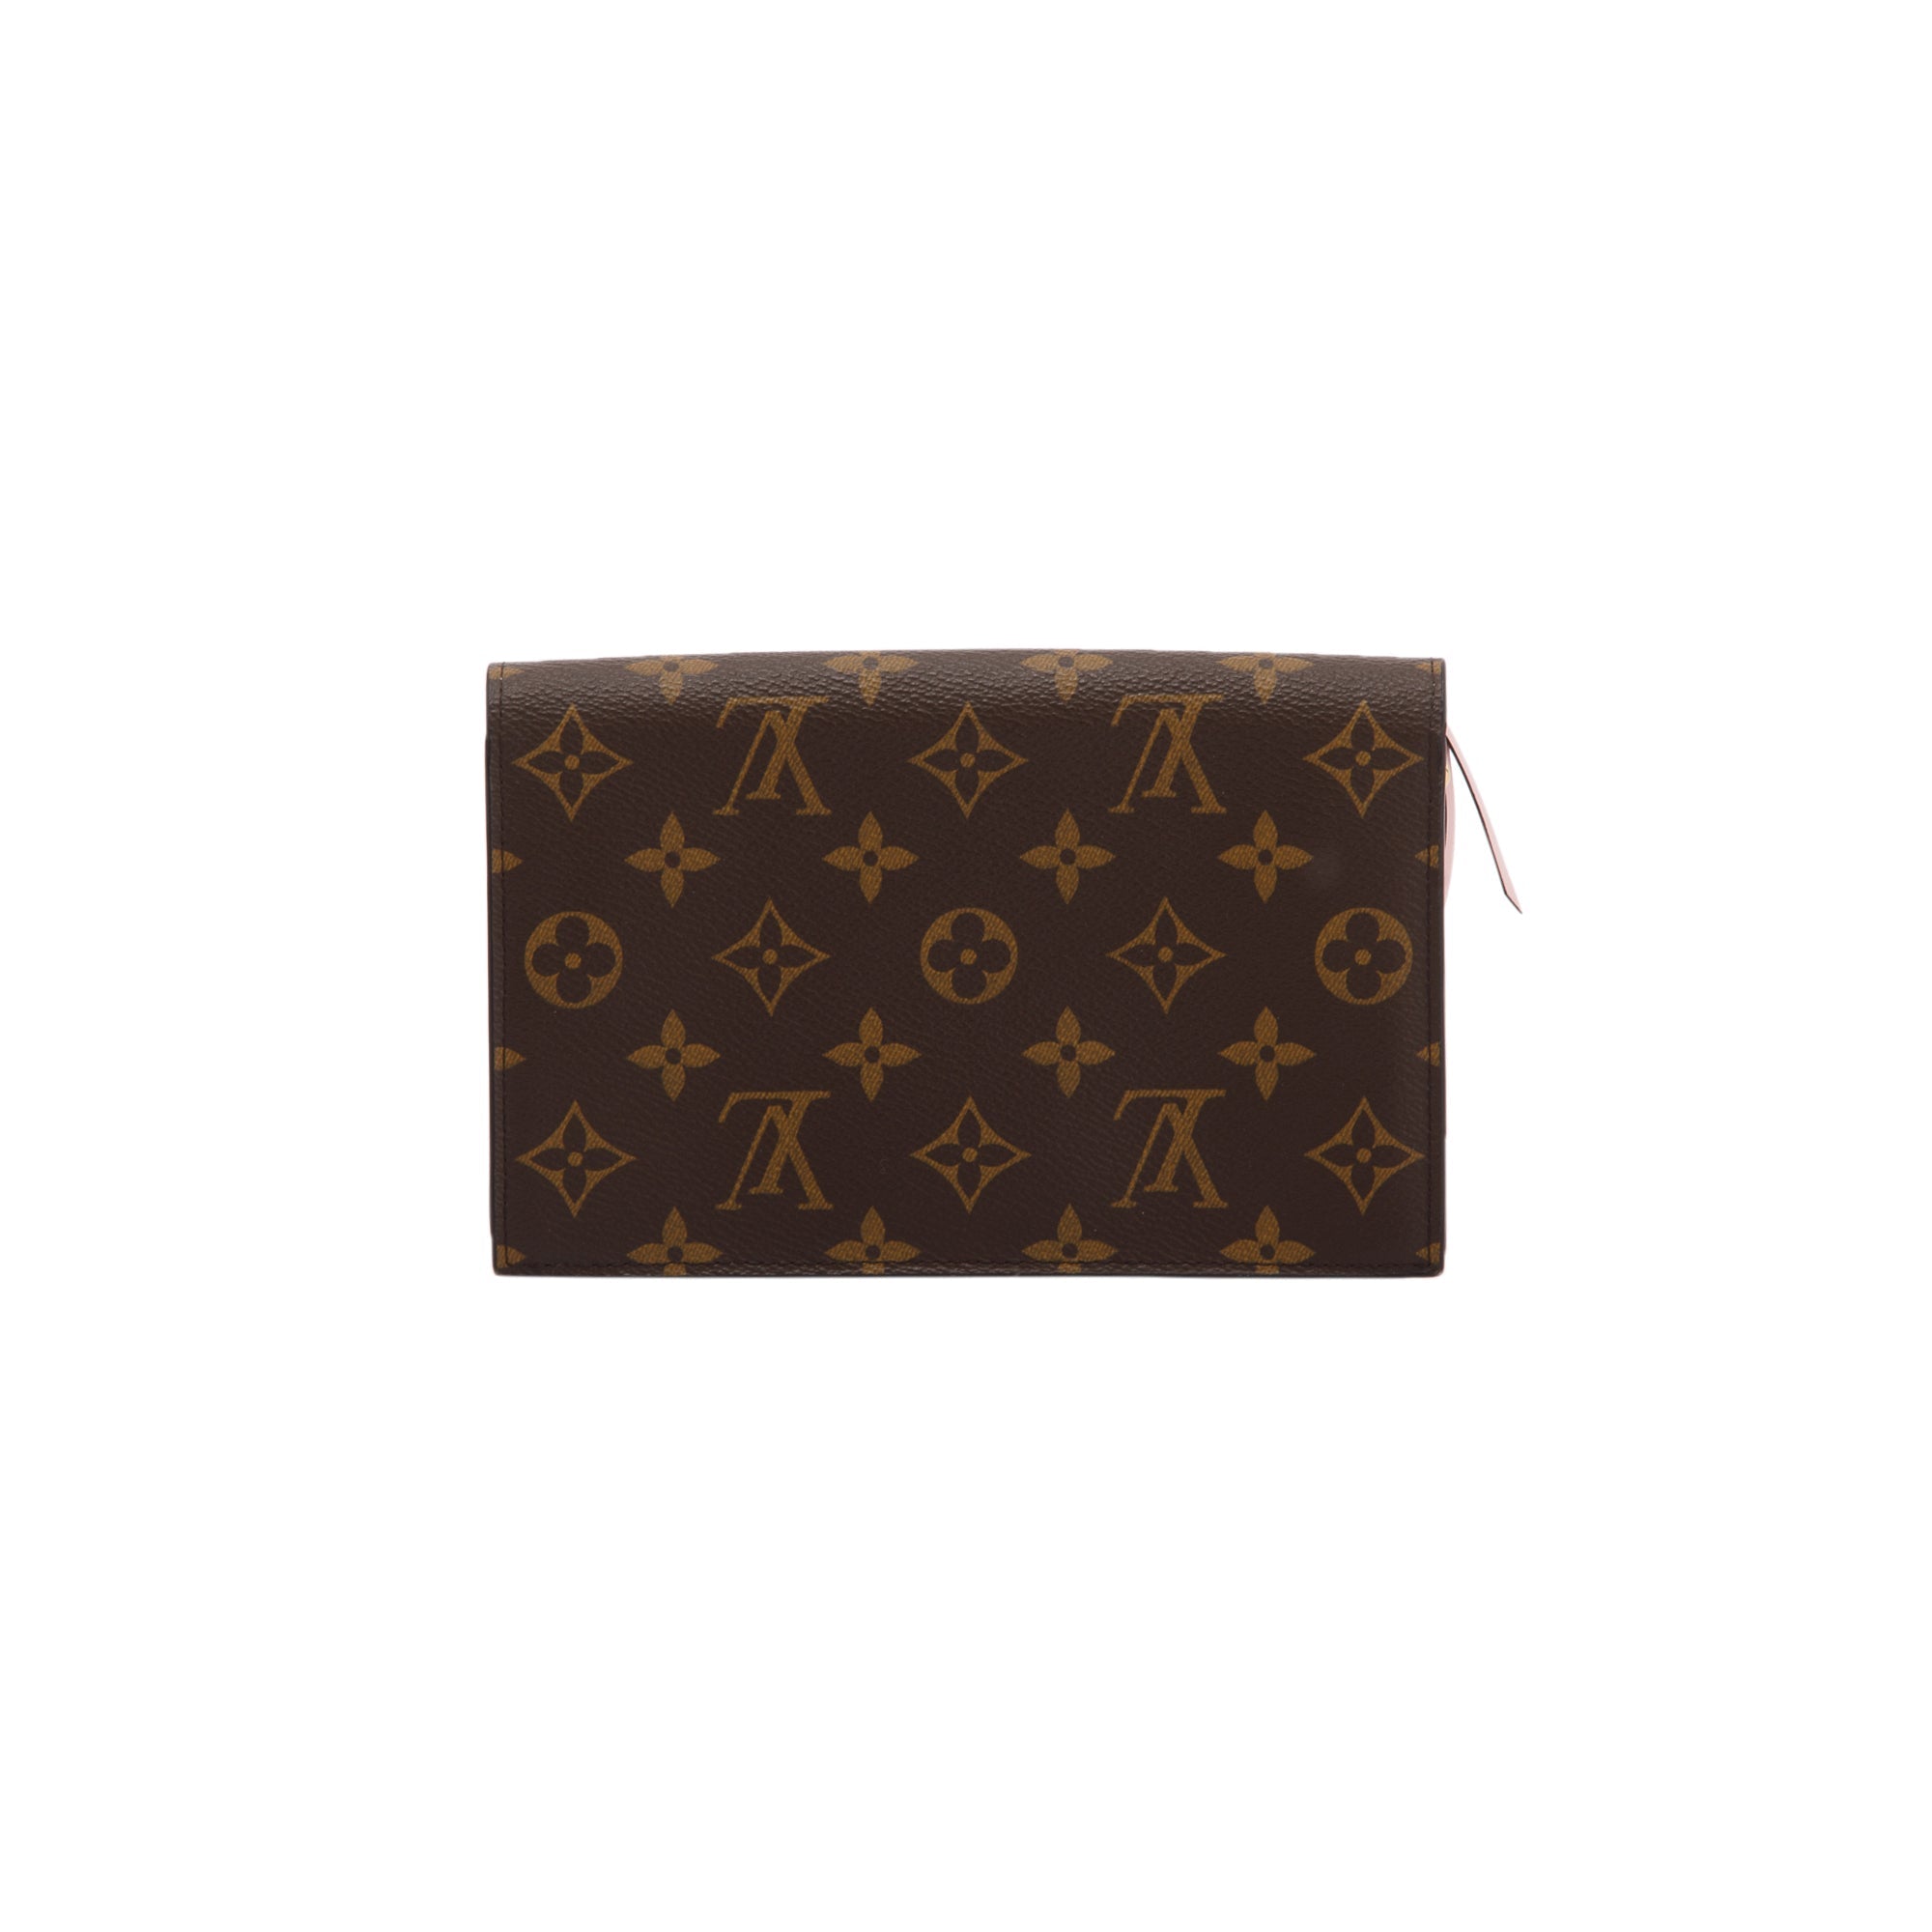 Louis Vuitton Flore Chain Wallet Monogram Brown/Rose Ballerine in